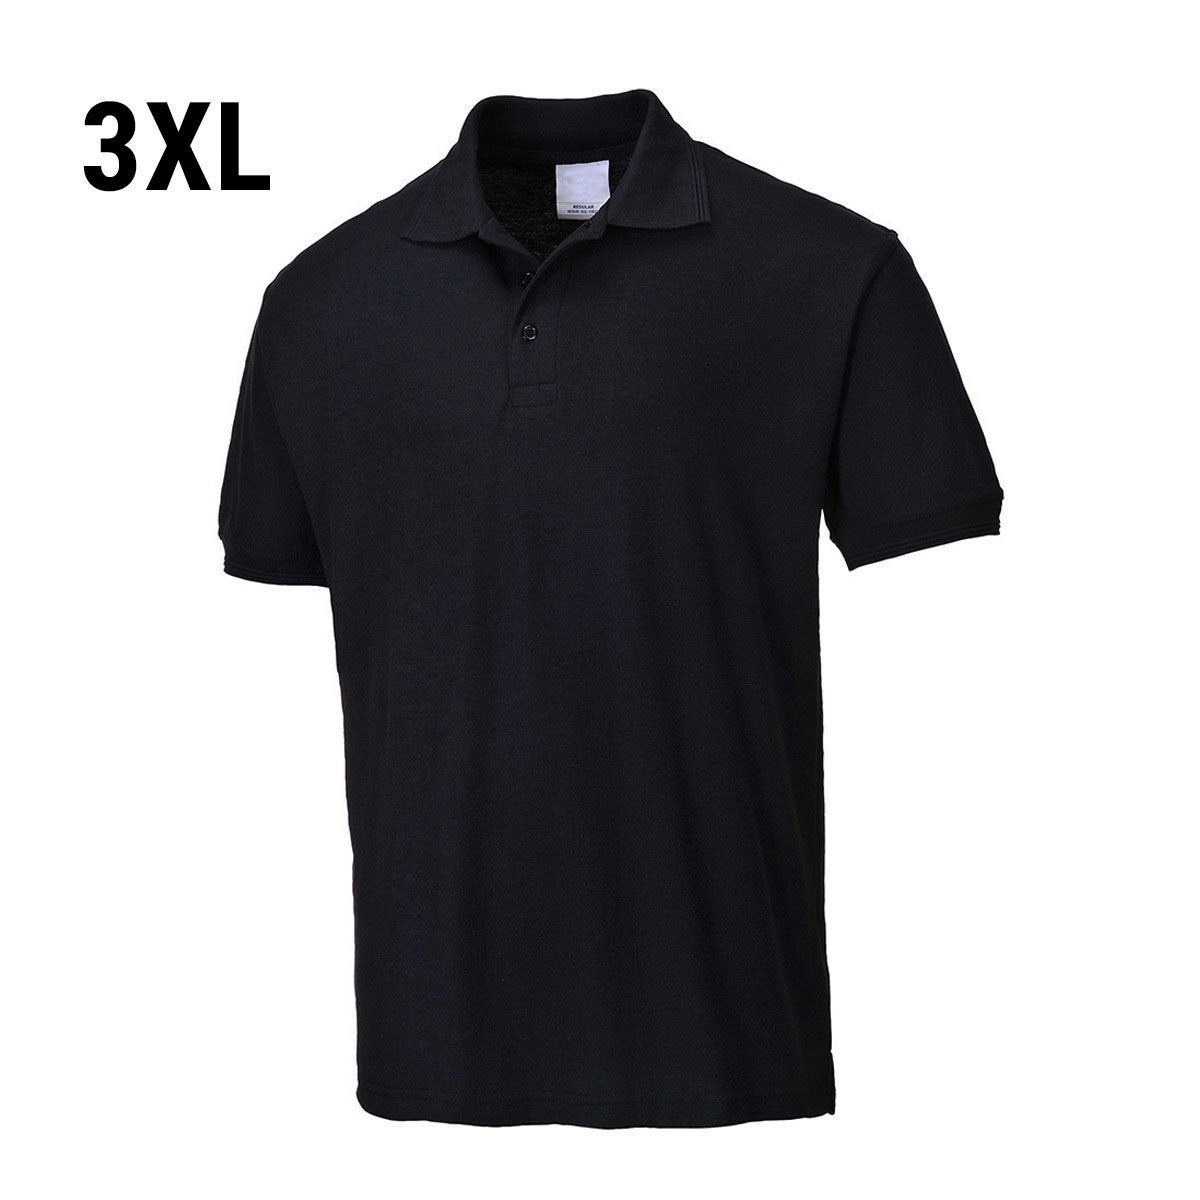 Poloskjorte for menn - Svart - Størrelse: 3XL